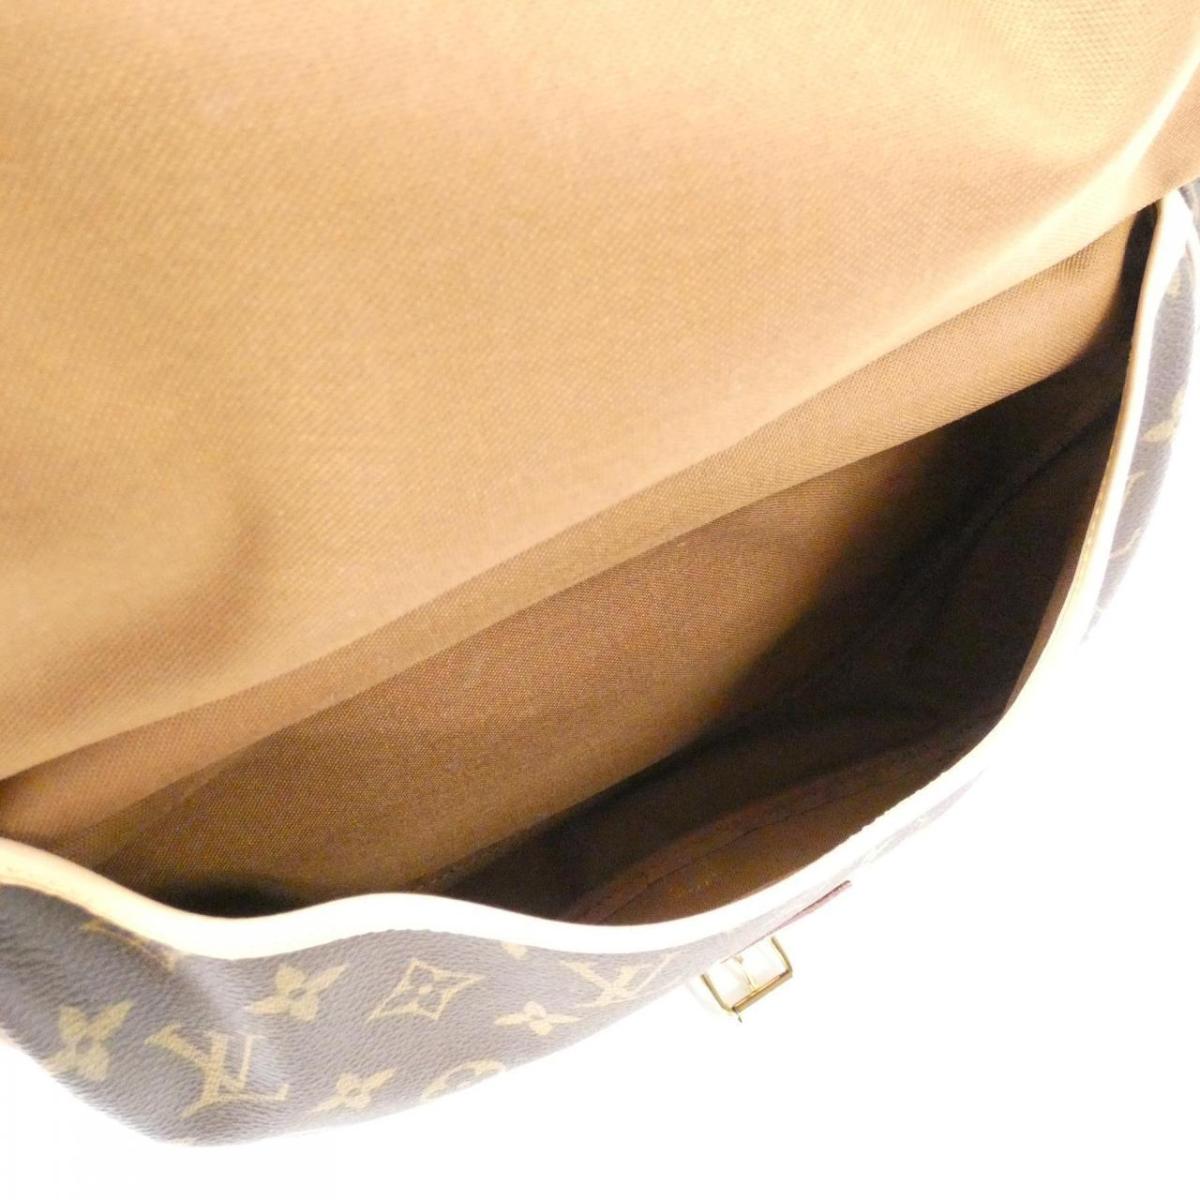 Louis Vuitton Monogram 30 M42256 Shoulder Bag